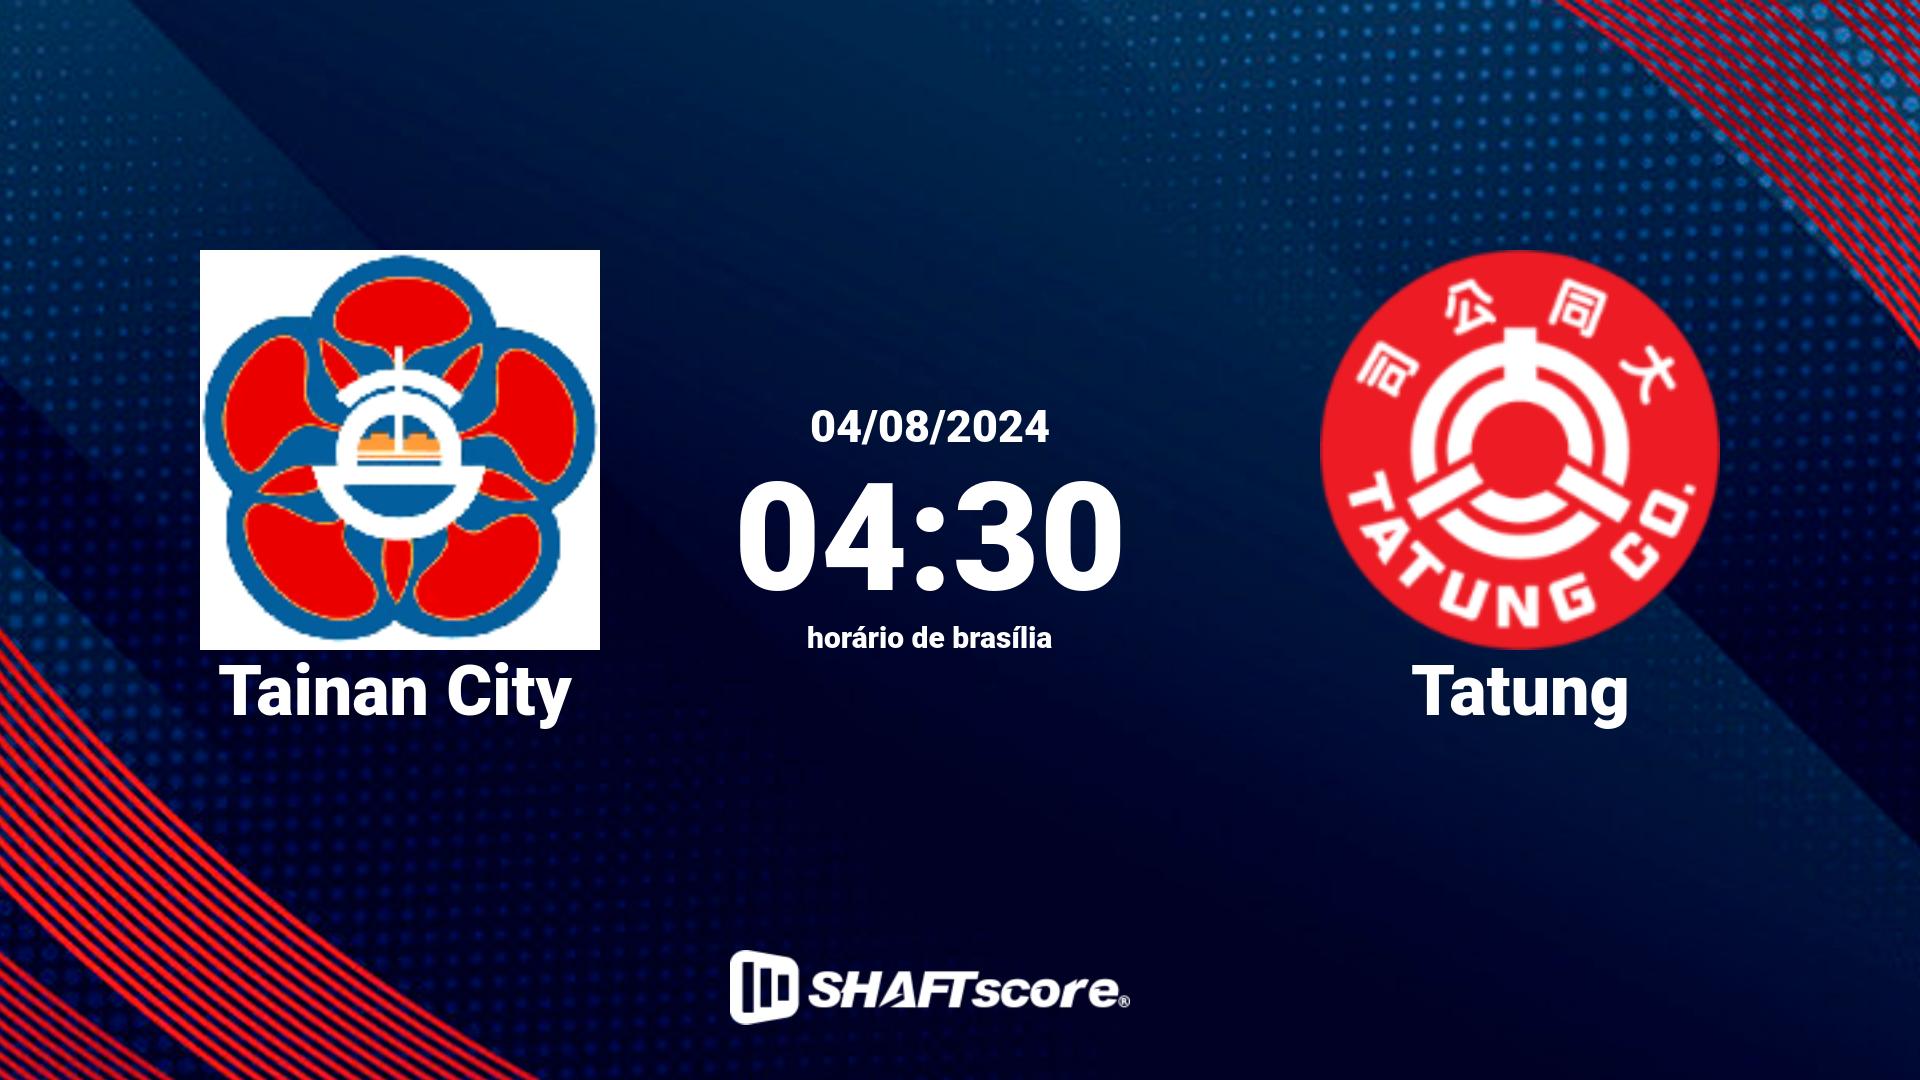 Estatísticas do jogo Tainan City vs Tatung 04.08 04:30